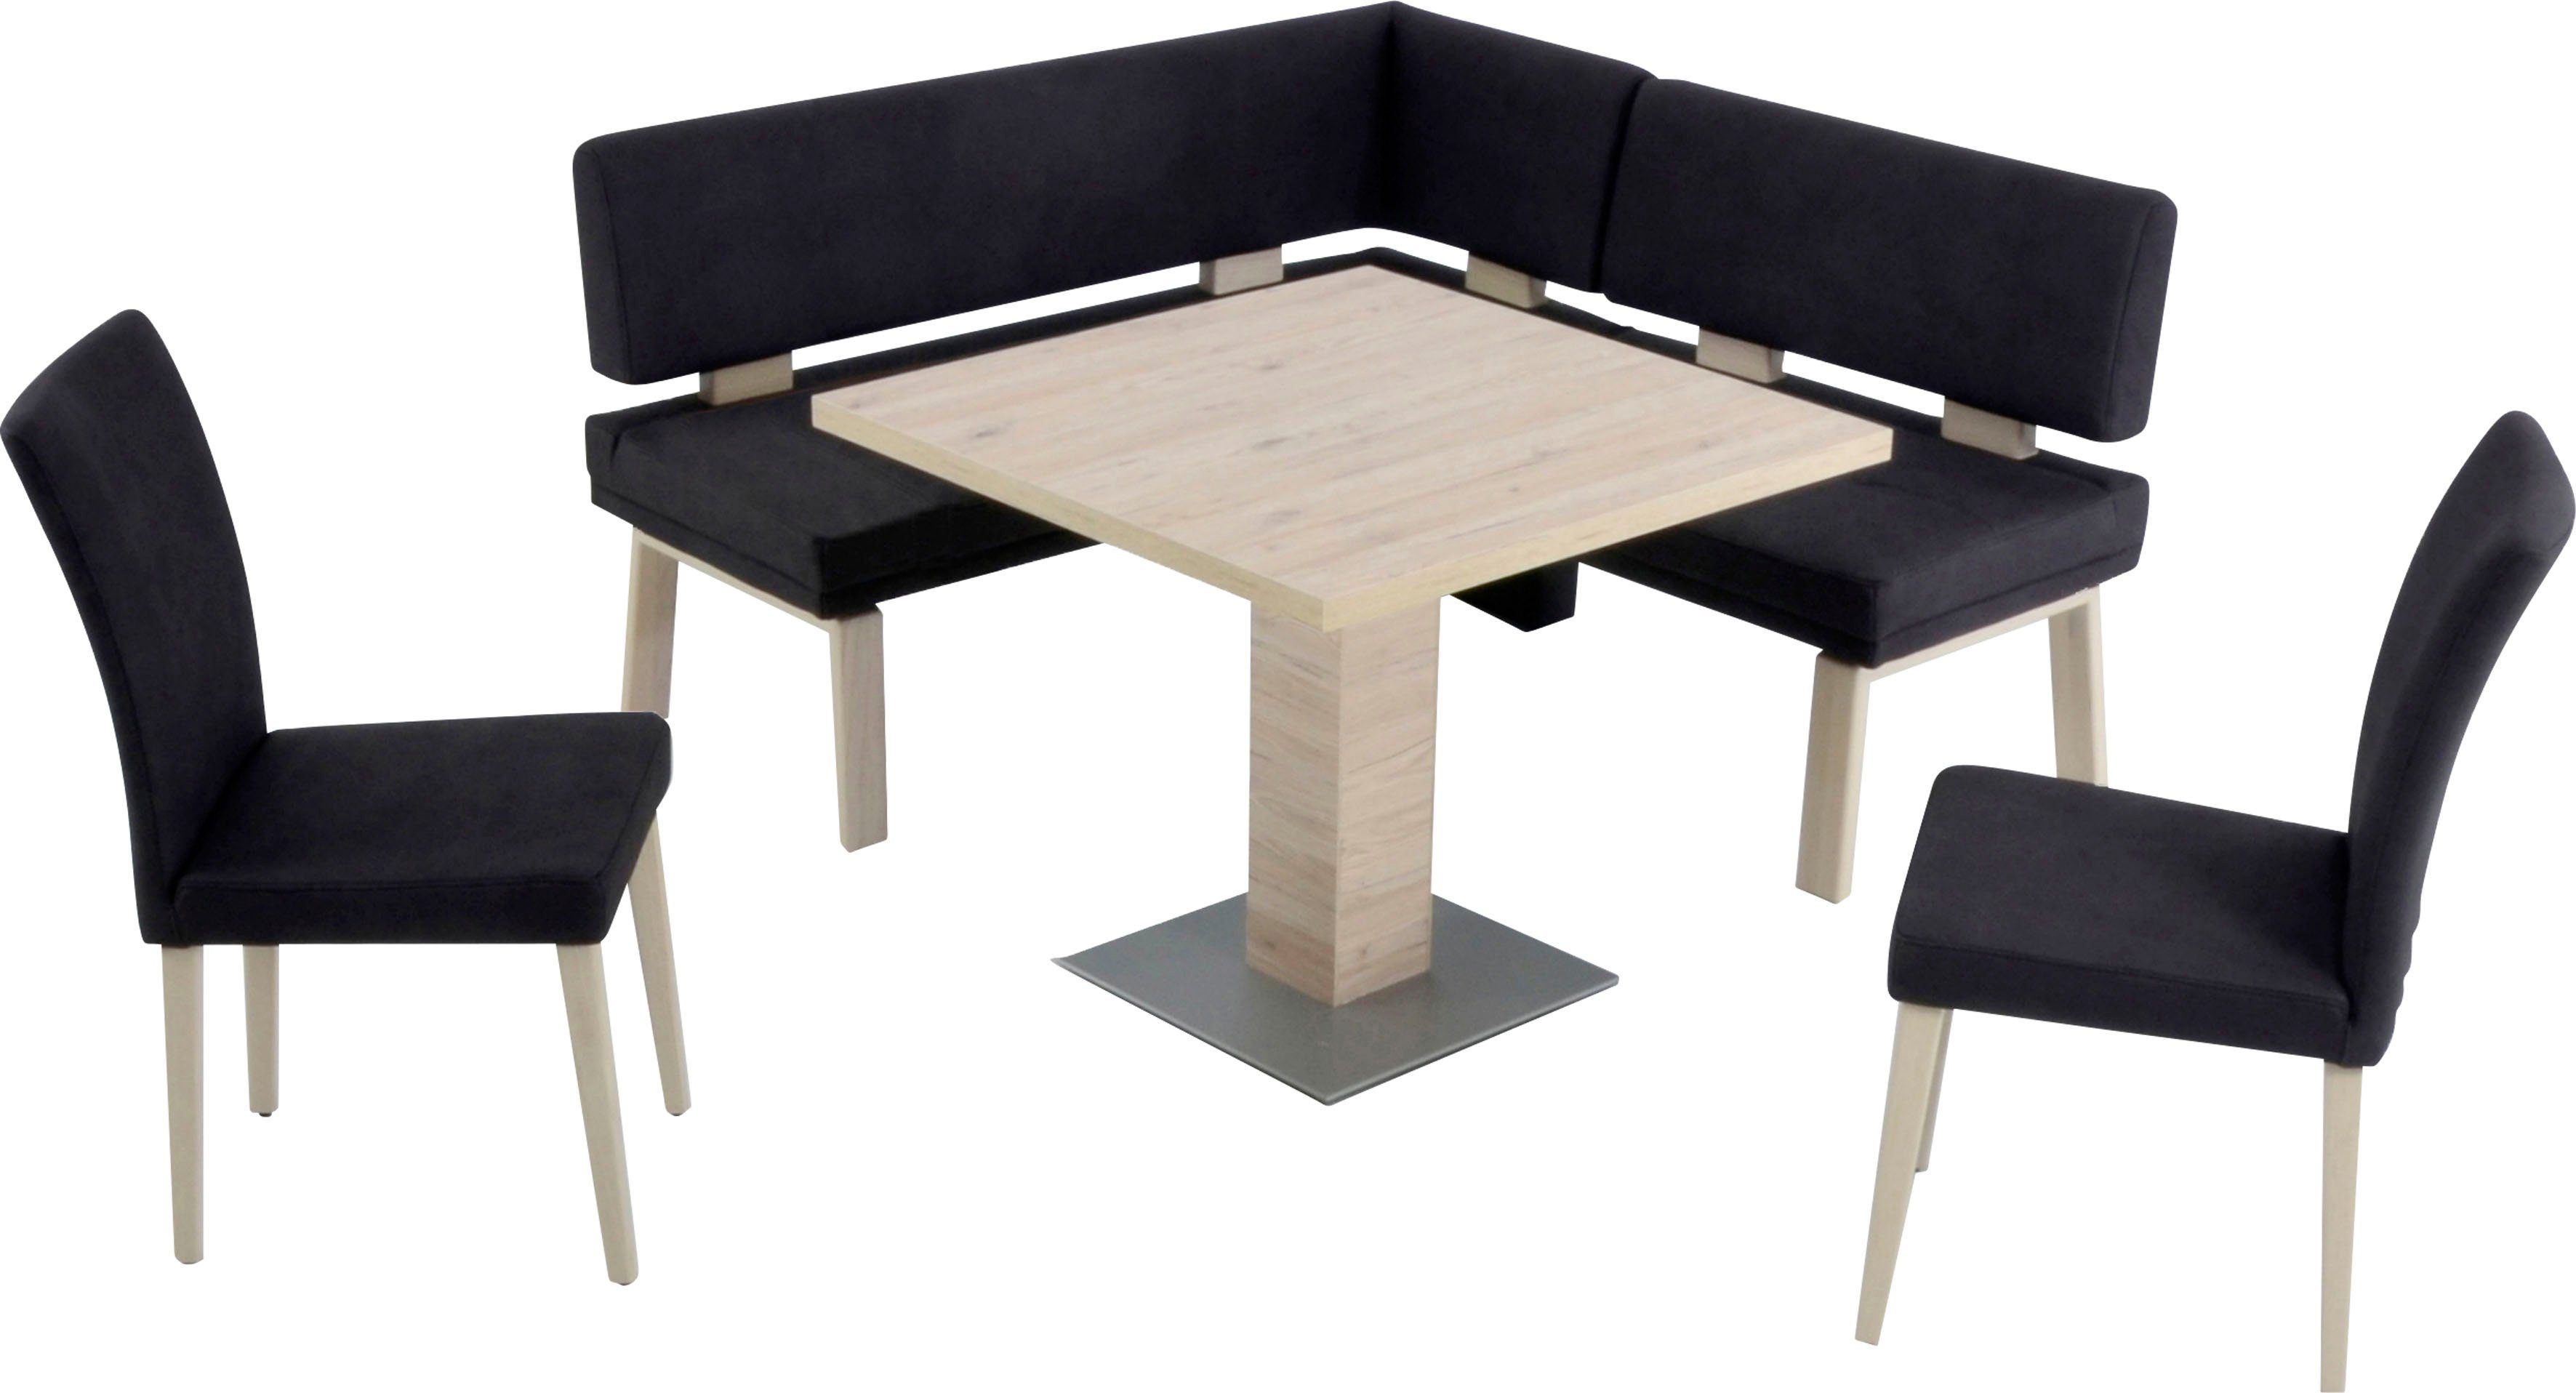 K+W Komfort & Wohnen gleichschenklig darkbrown Eiche 4-Fußholzstühle 90x90cm, Eckbankgruppe I, und Santos Tisch 157cm, zwei